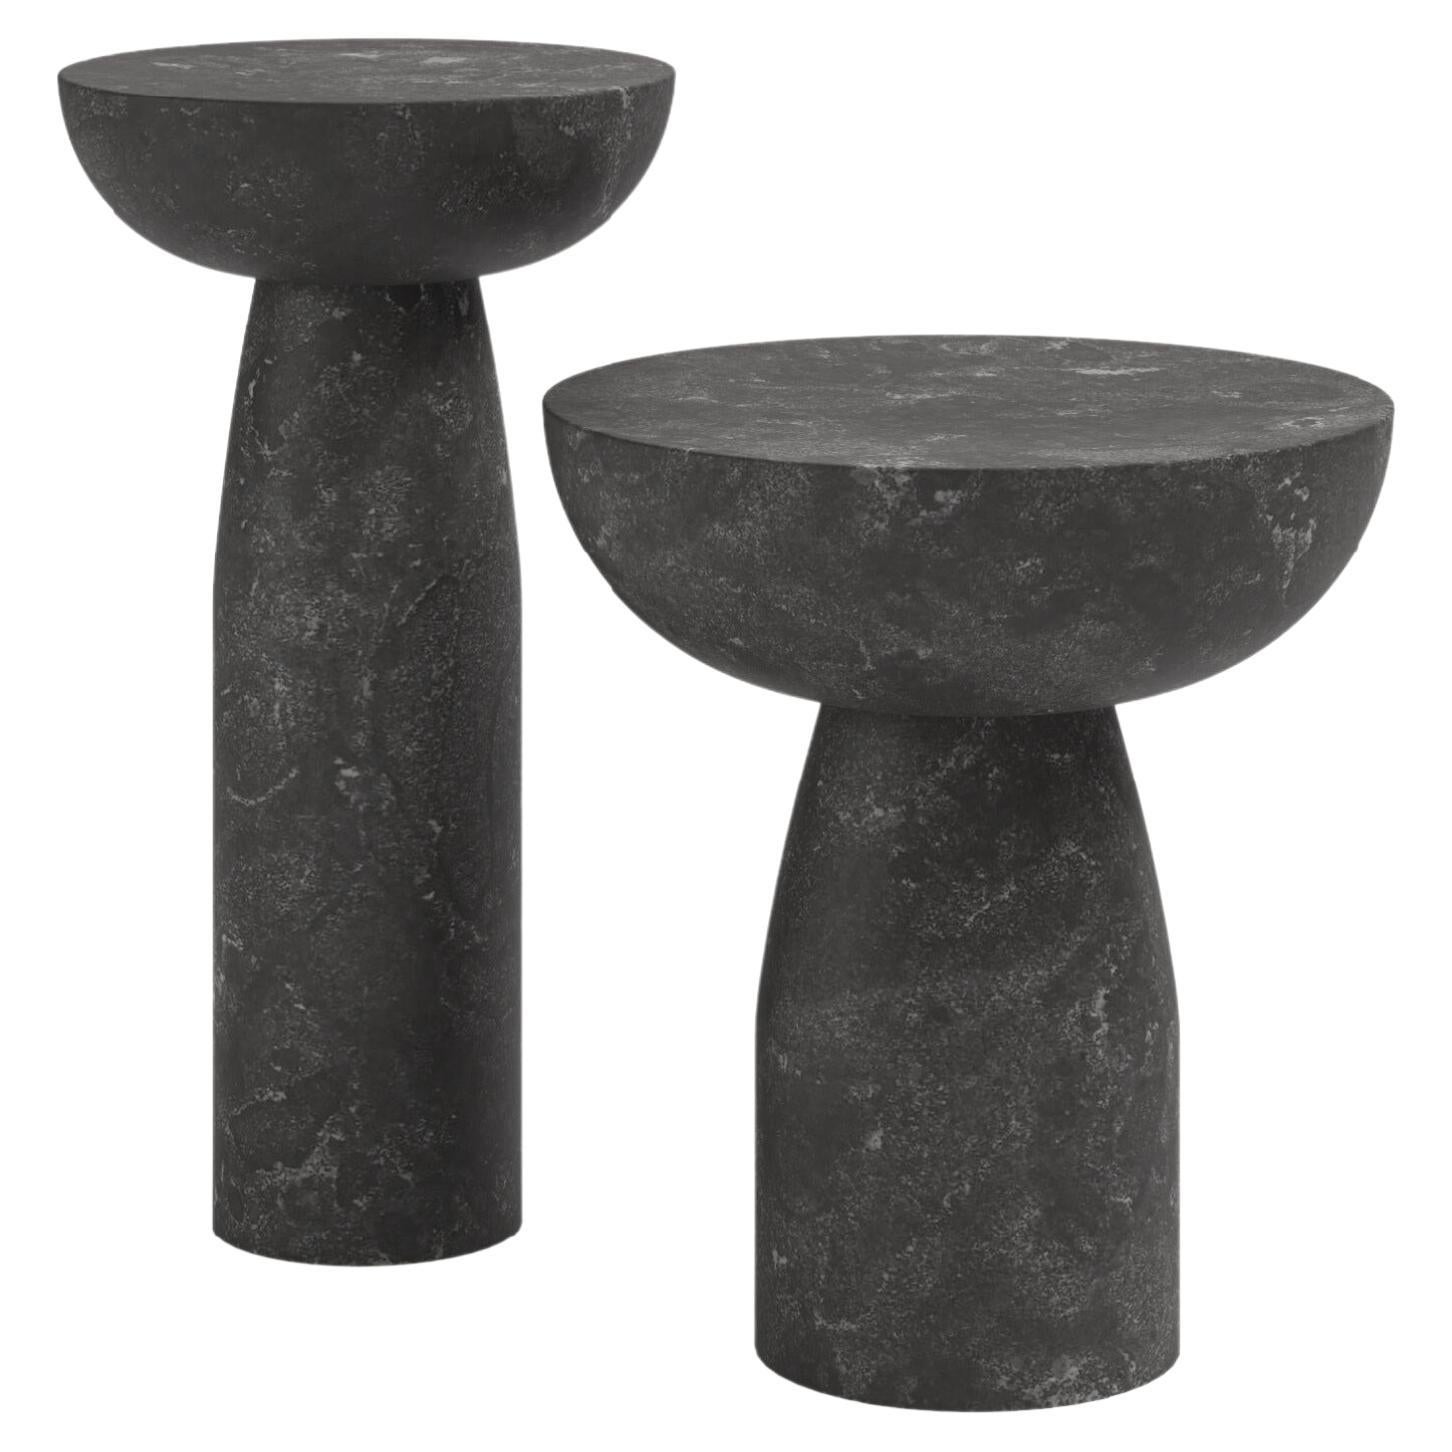 FORM(LA) Sfera Round Side Table 18”L x 18”W x 20”H Nero Petite Granite For Sale